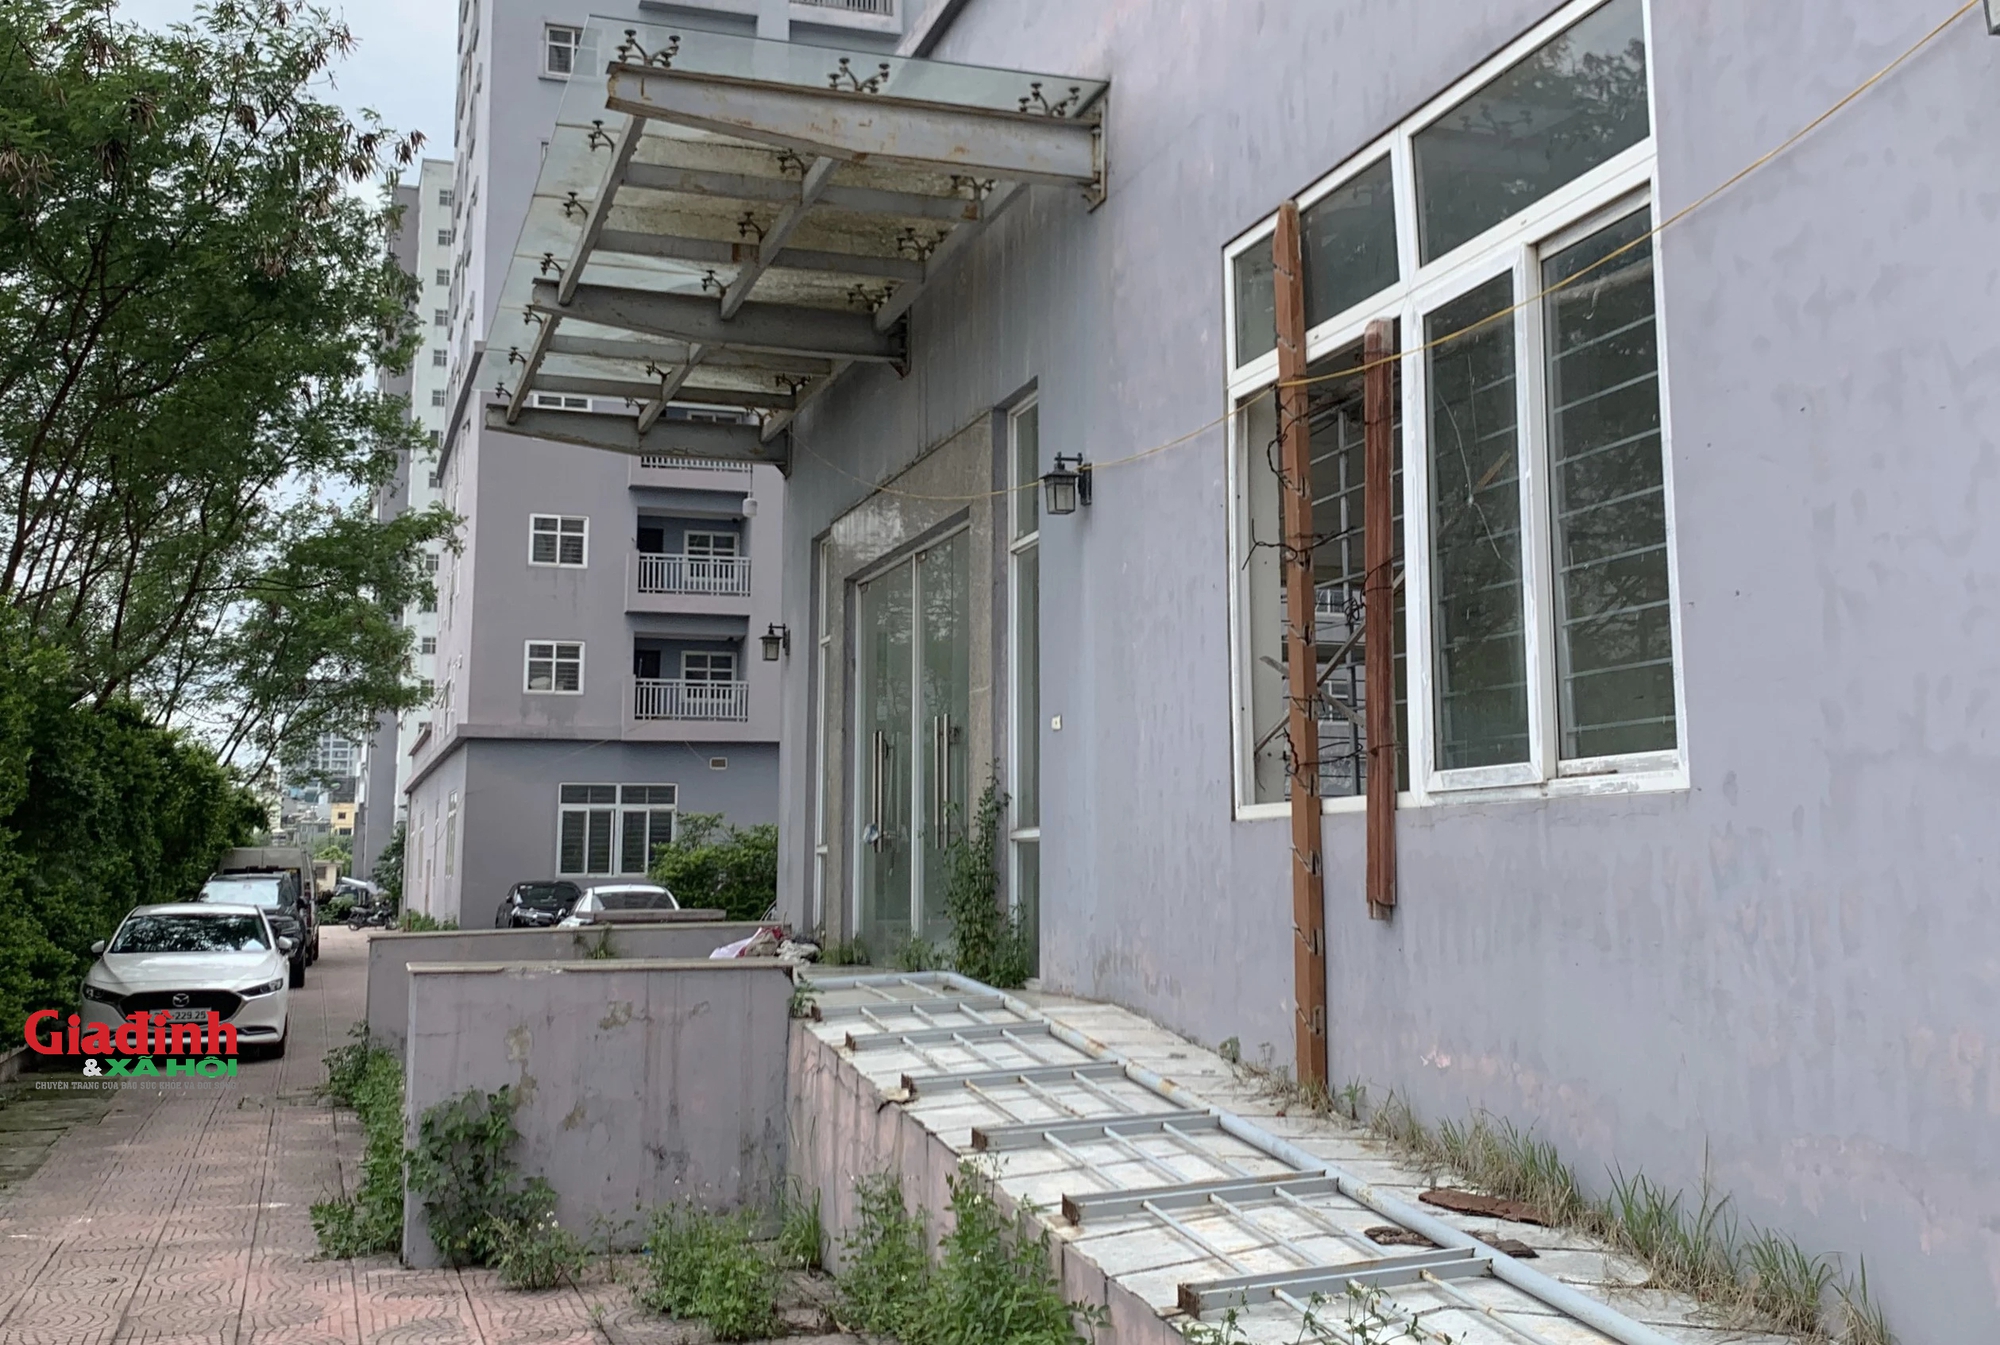 Hà Nội: Dự án tái định cư trì trệ, hàng ngàn căn hộ bị bỏ hoang nhiều năm - Ảnh 10.